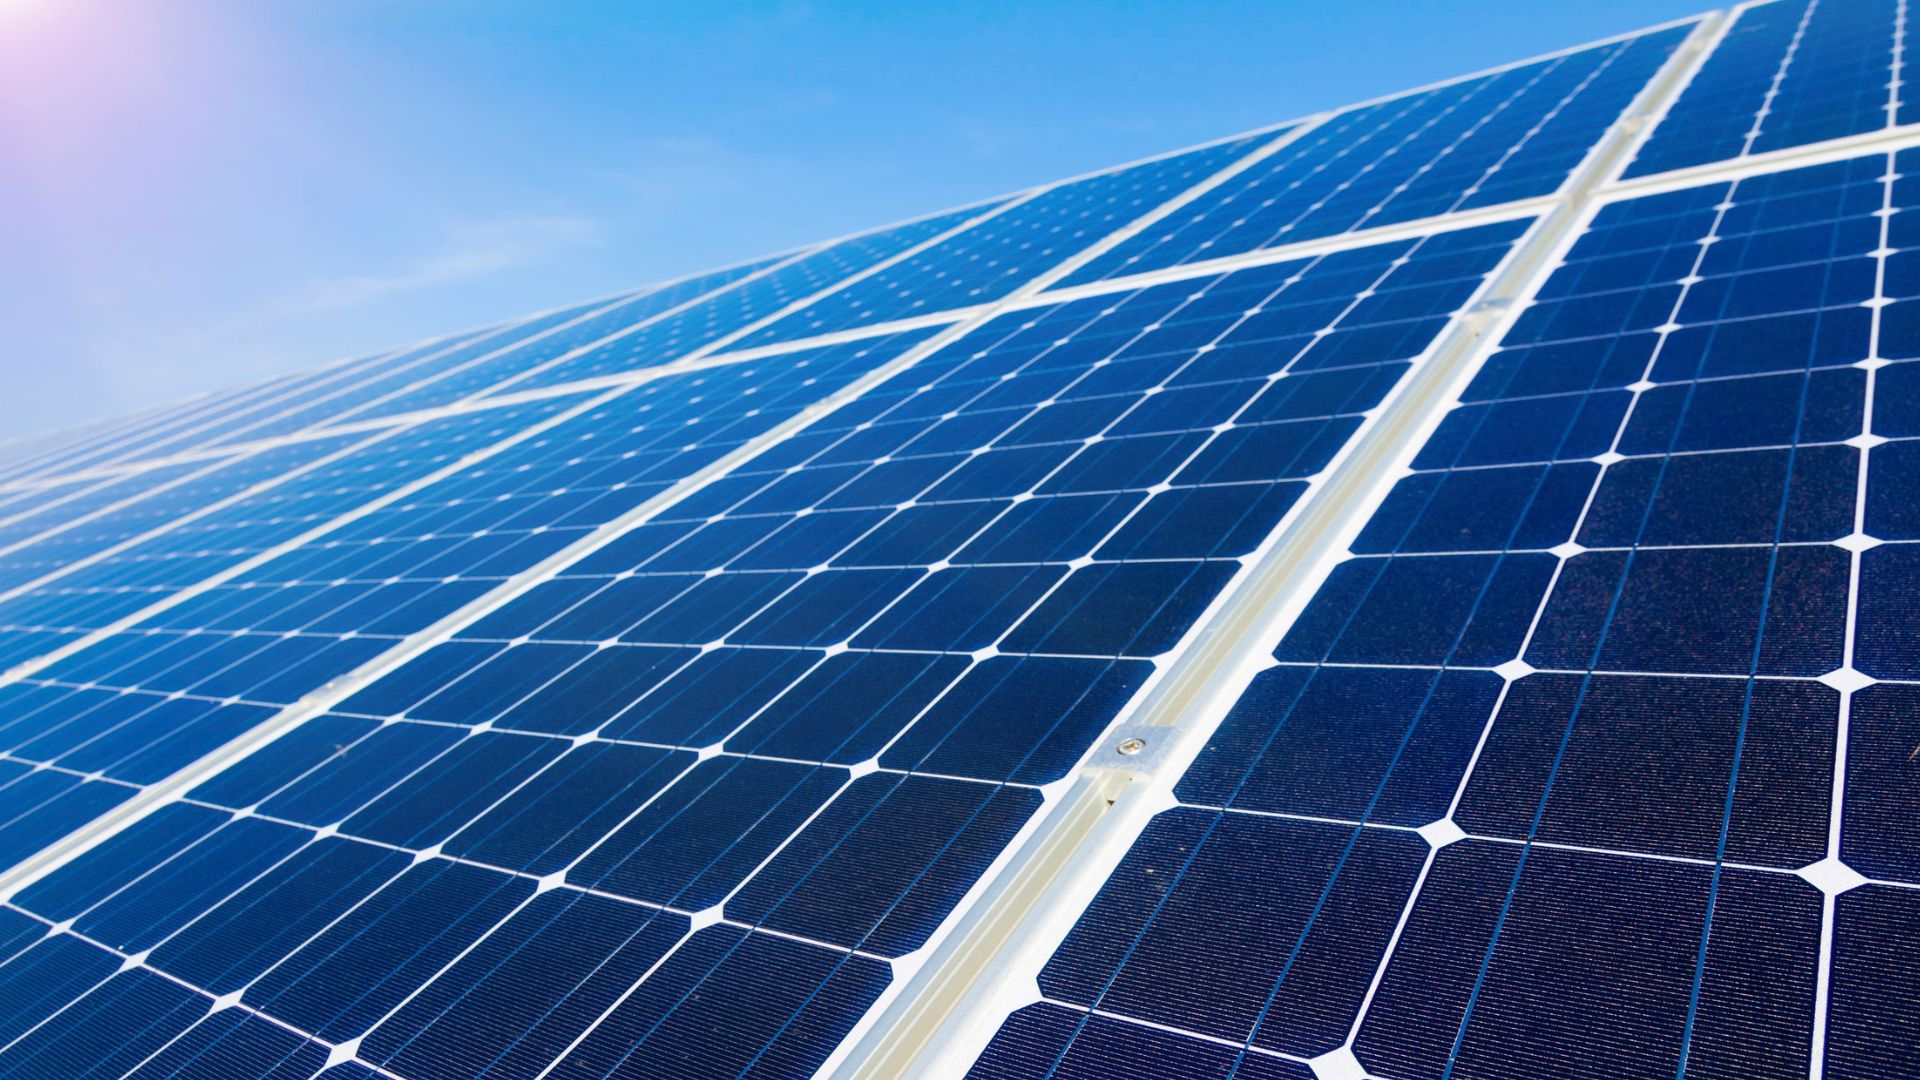 Continua vigent la bonificació de l’IBI per a plaques fotovoltaiques